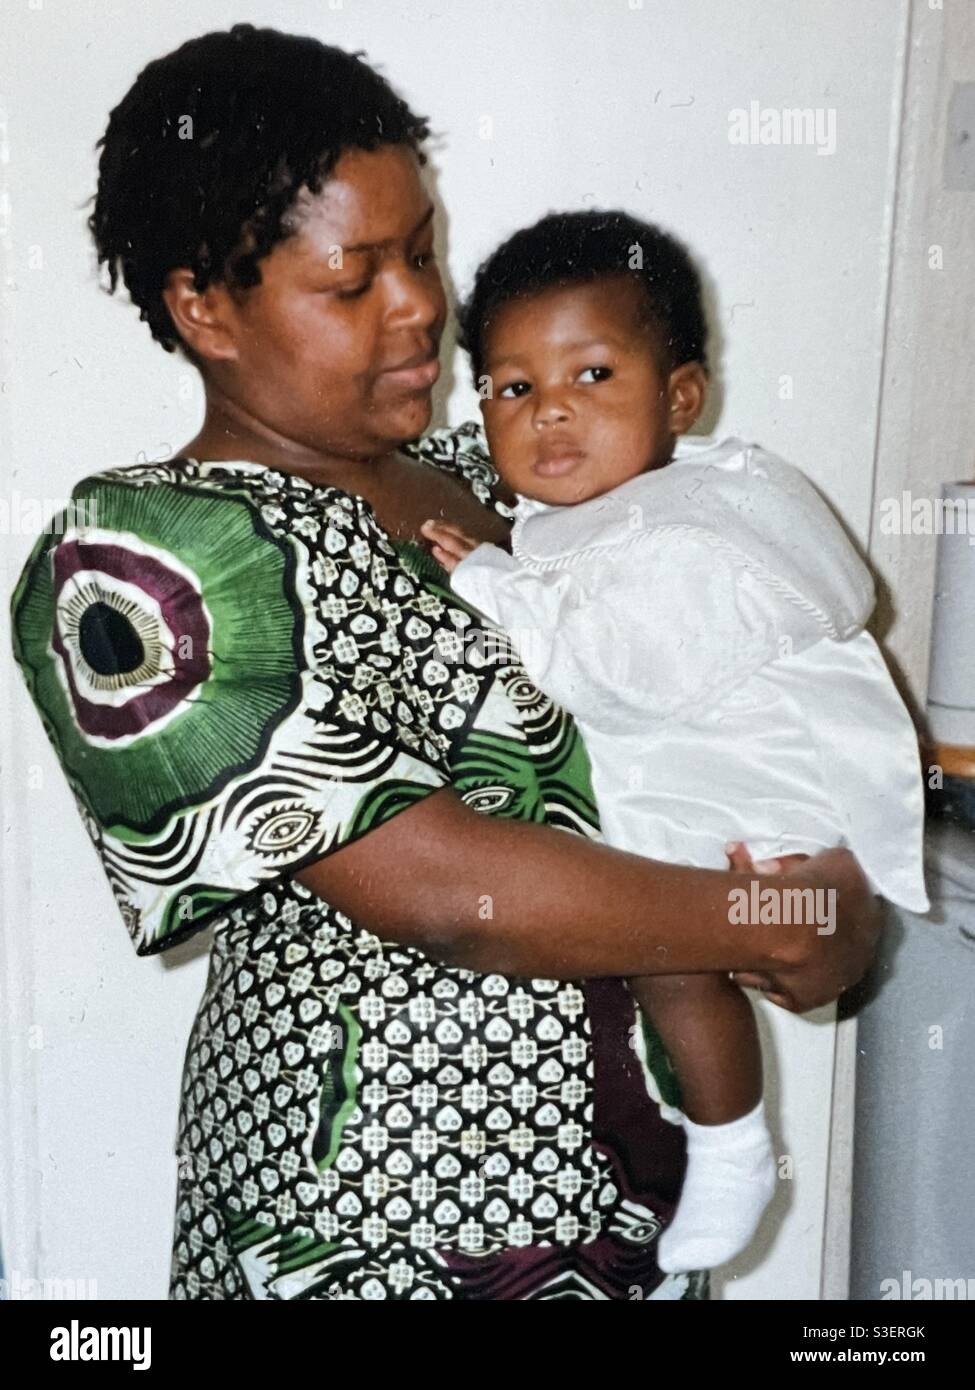 Regresa Ídolo mensual Mujer afro caribeña fotografías e imágenes de alta resolución - Alamy